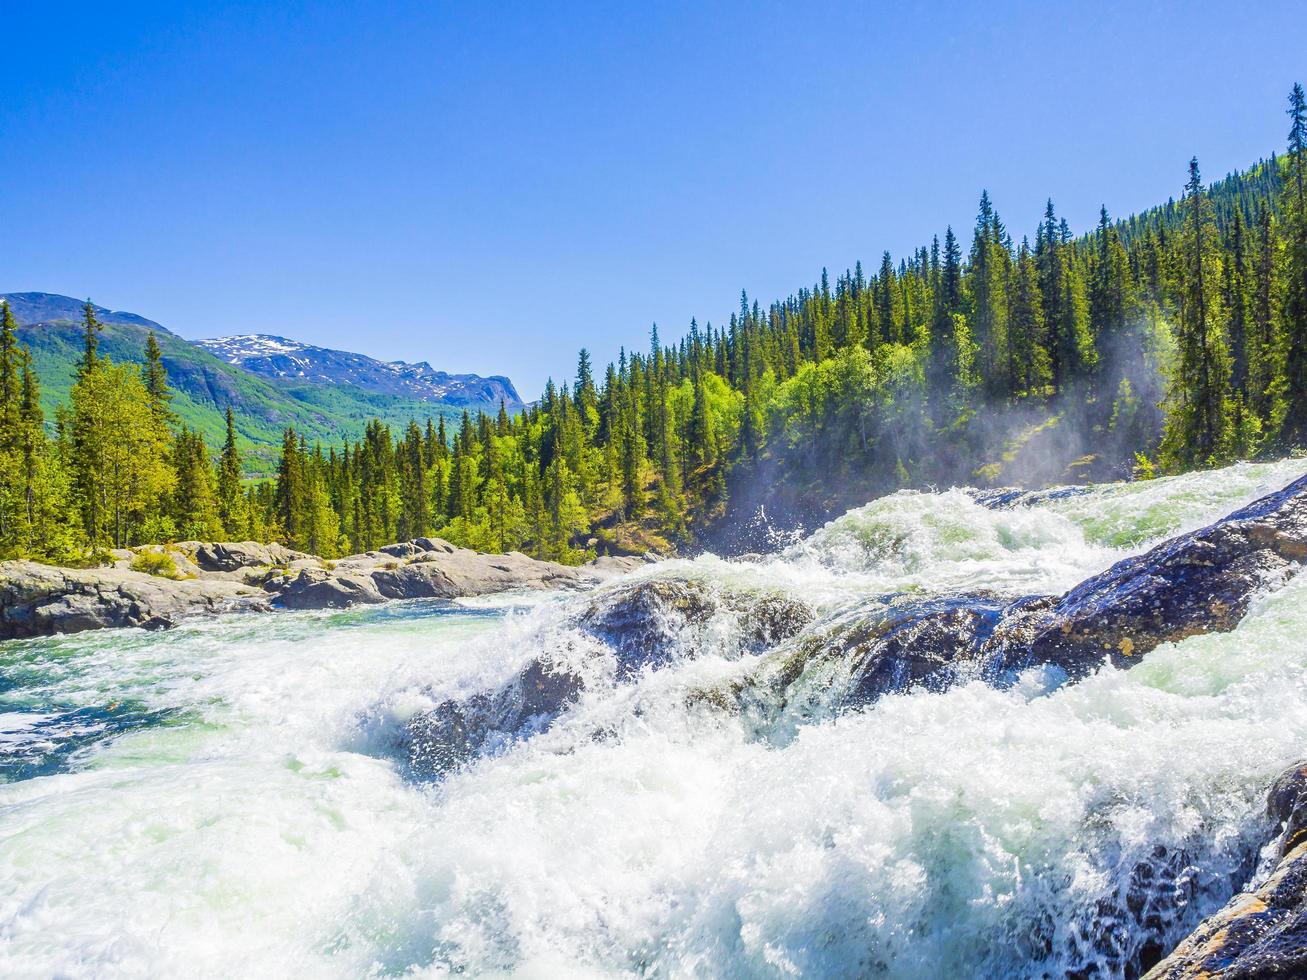 acqua di fiume che scorre veloce della bellissima cascata rjukandefossen hemsedal norvegia. foto